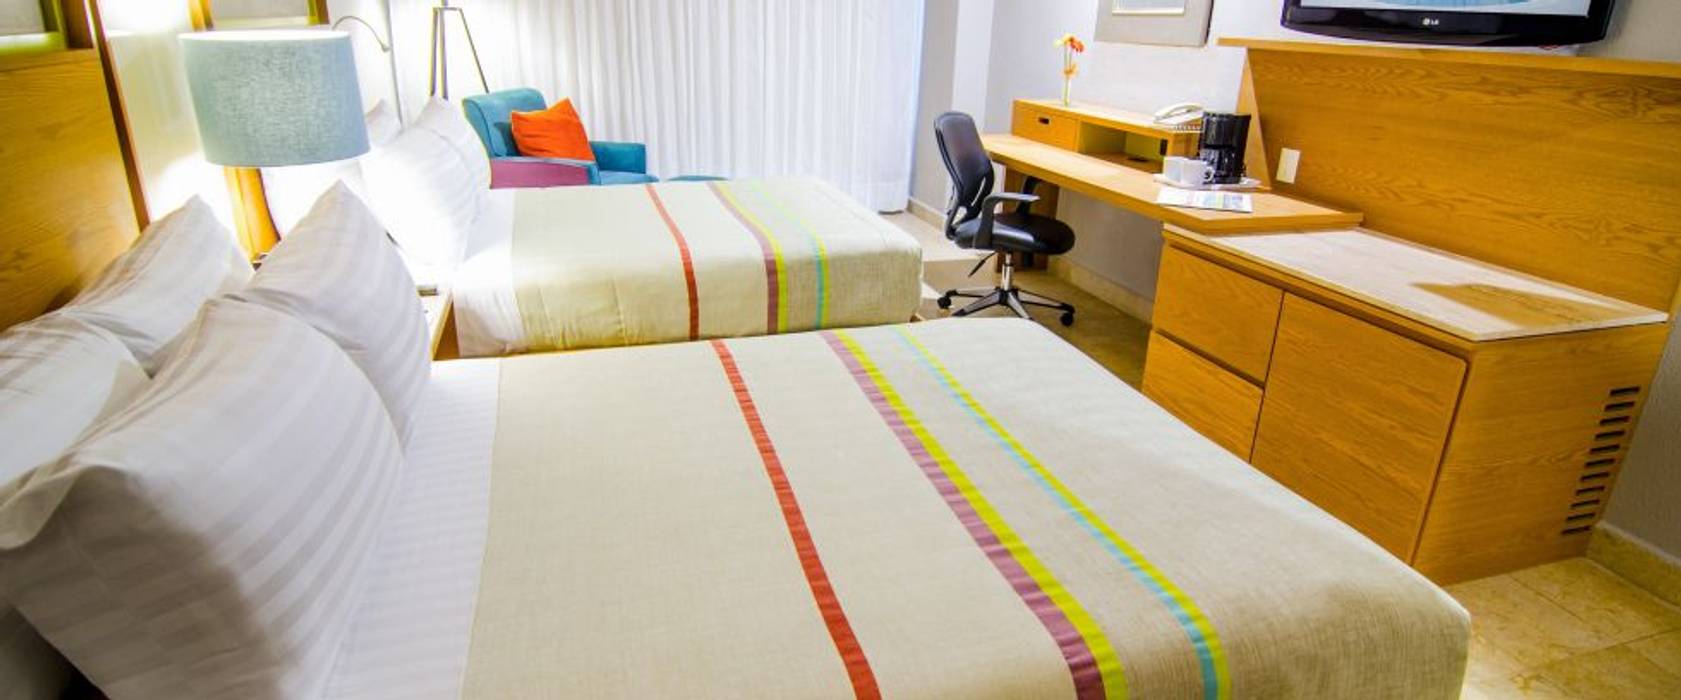 Hotel Galería Plaza Veracruz, México 2015 Nua Colección Dormitorios minimalistas Sintético Marrón Textiles